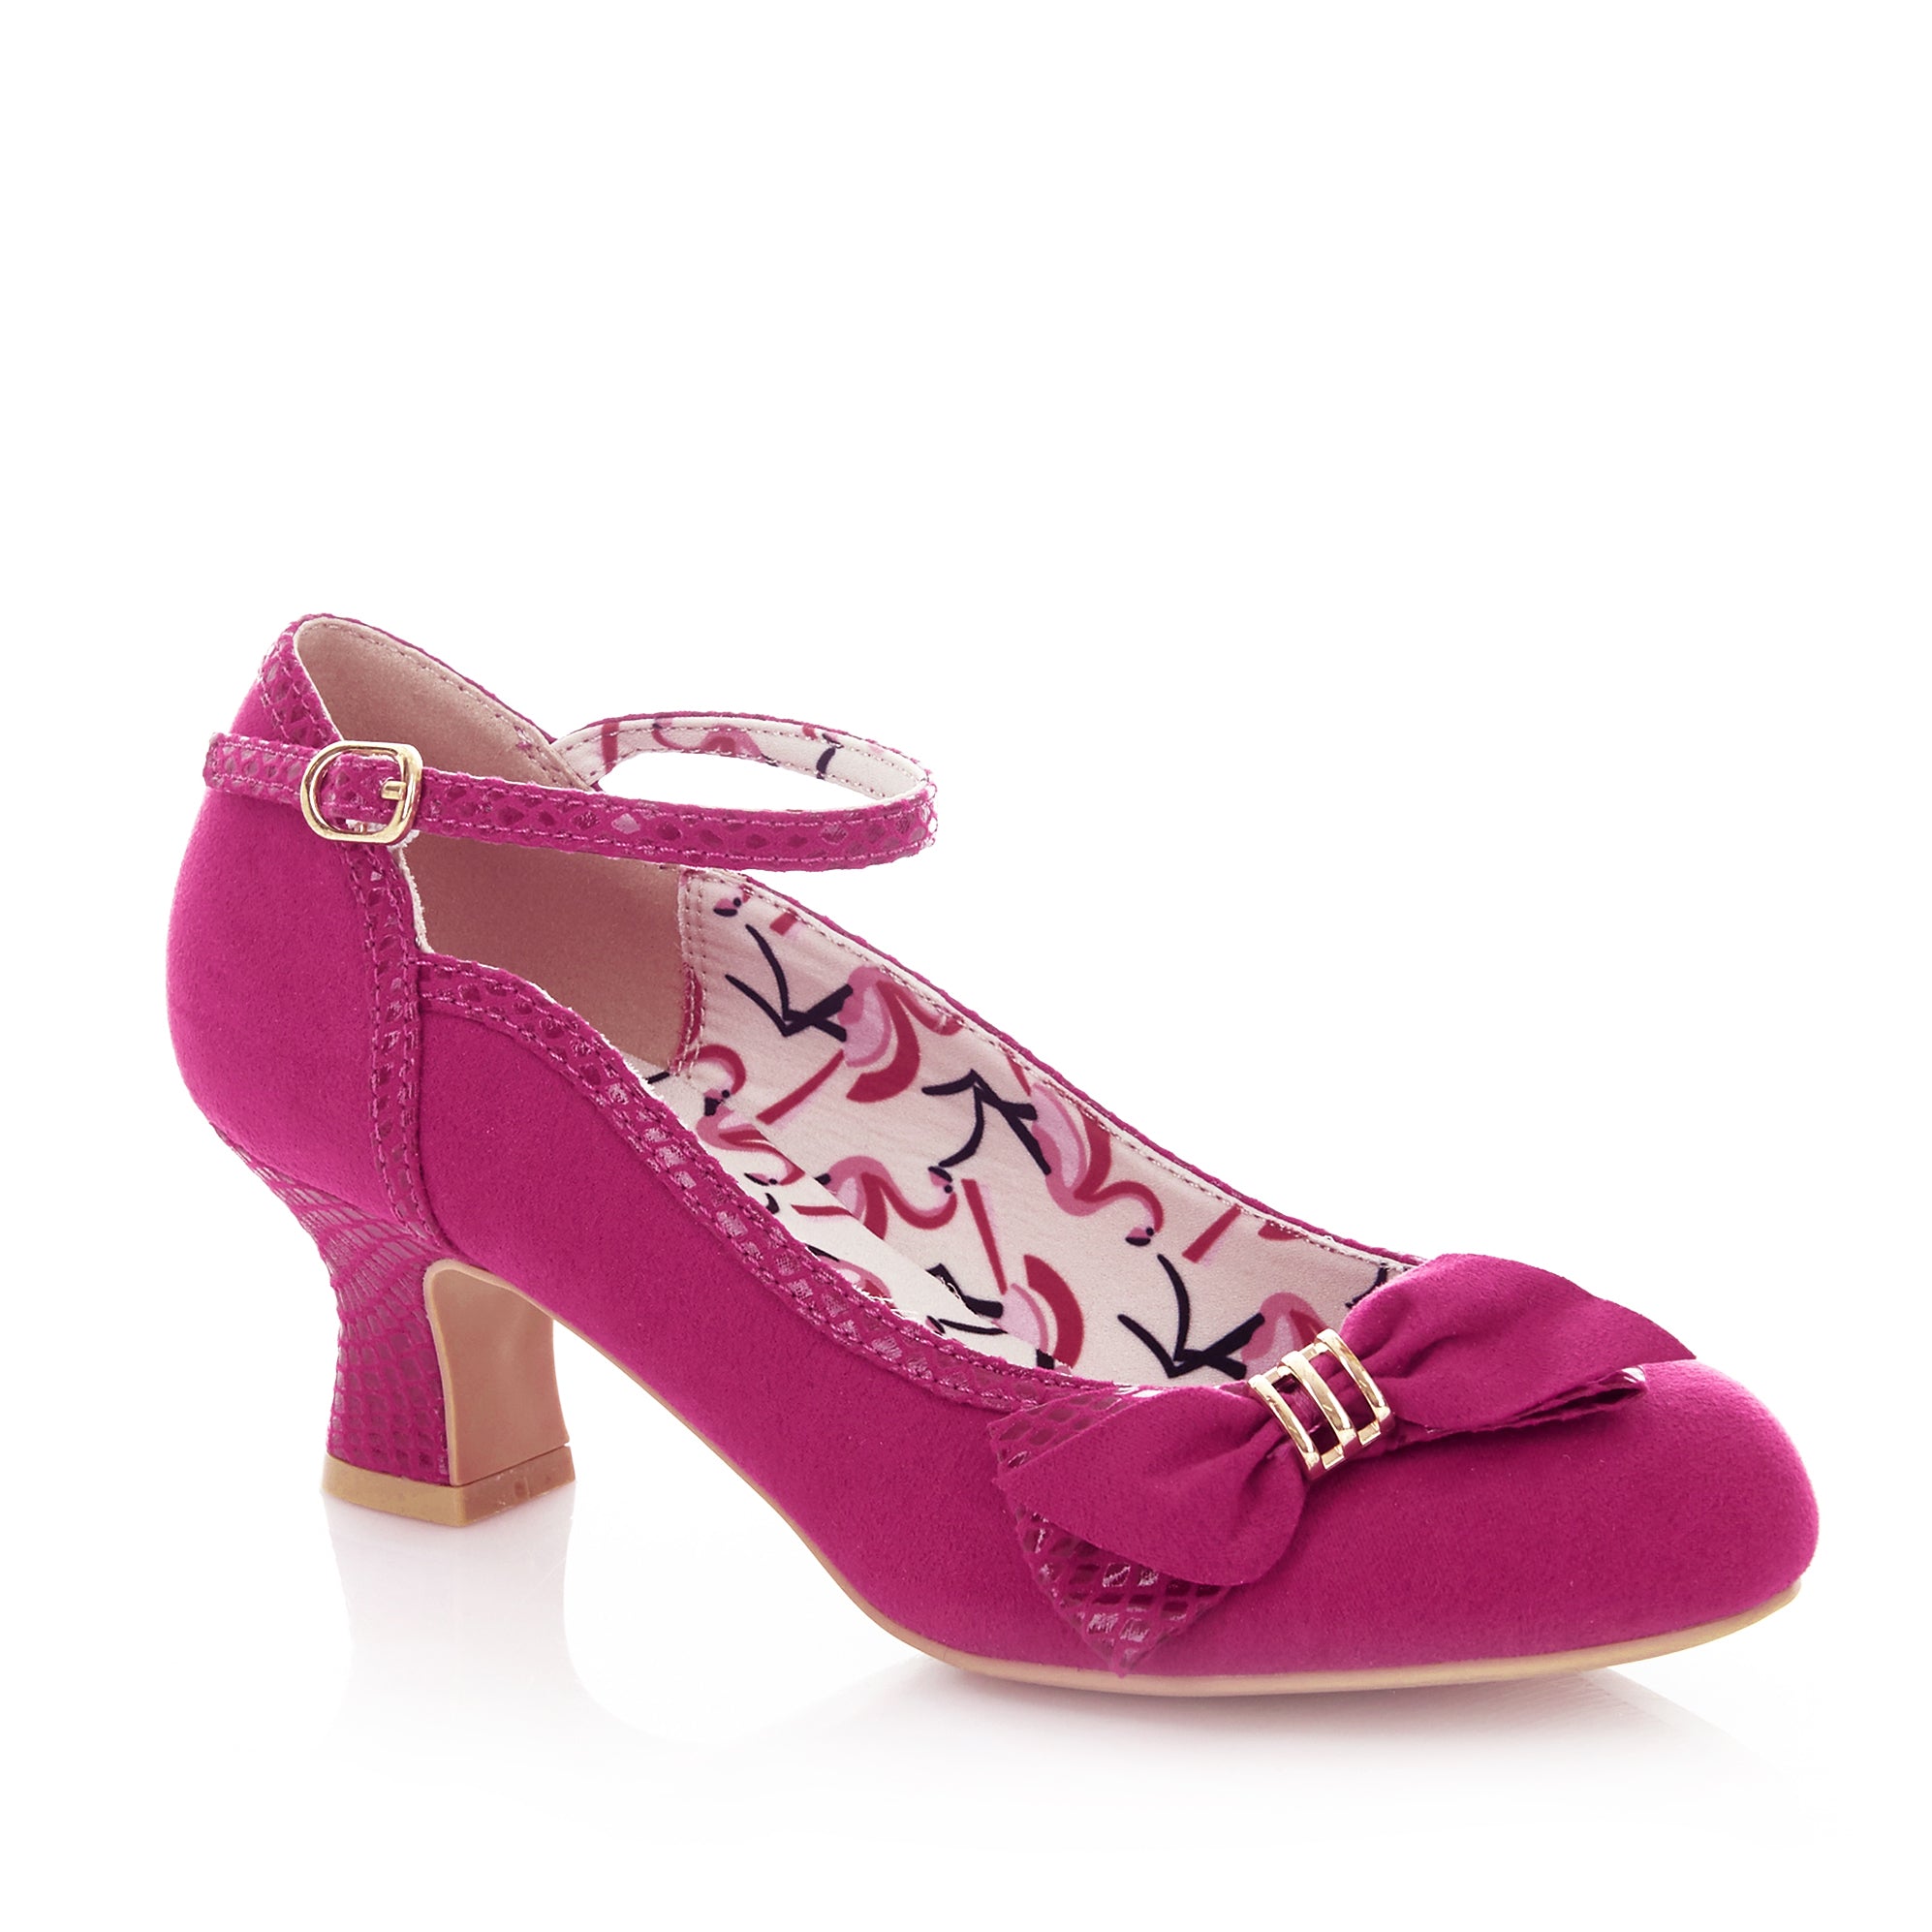 fuschia pink court shoes uk